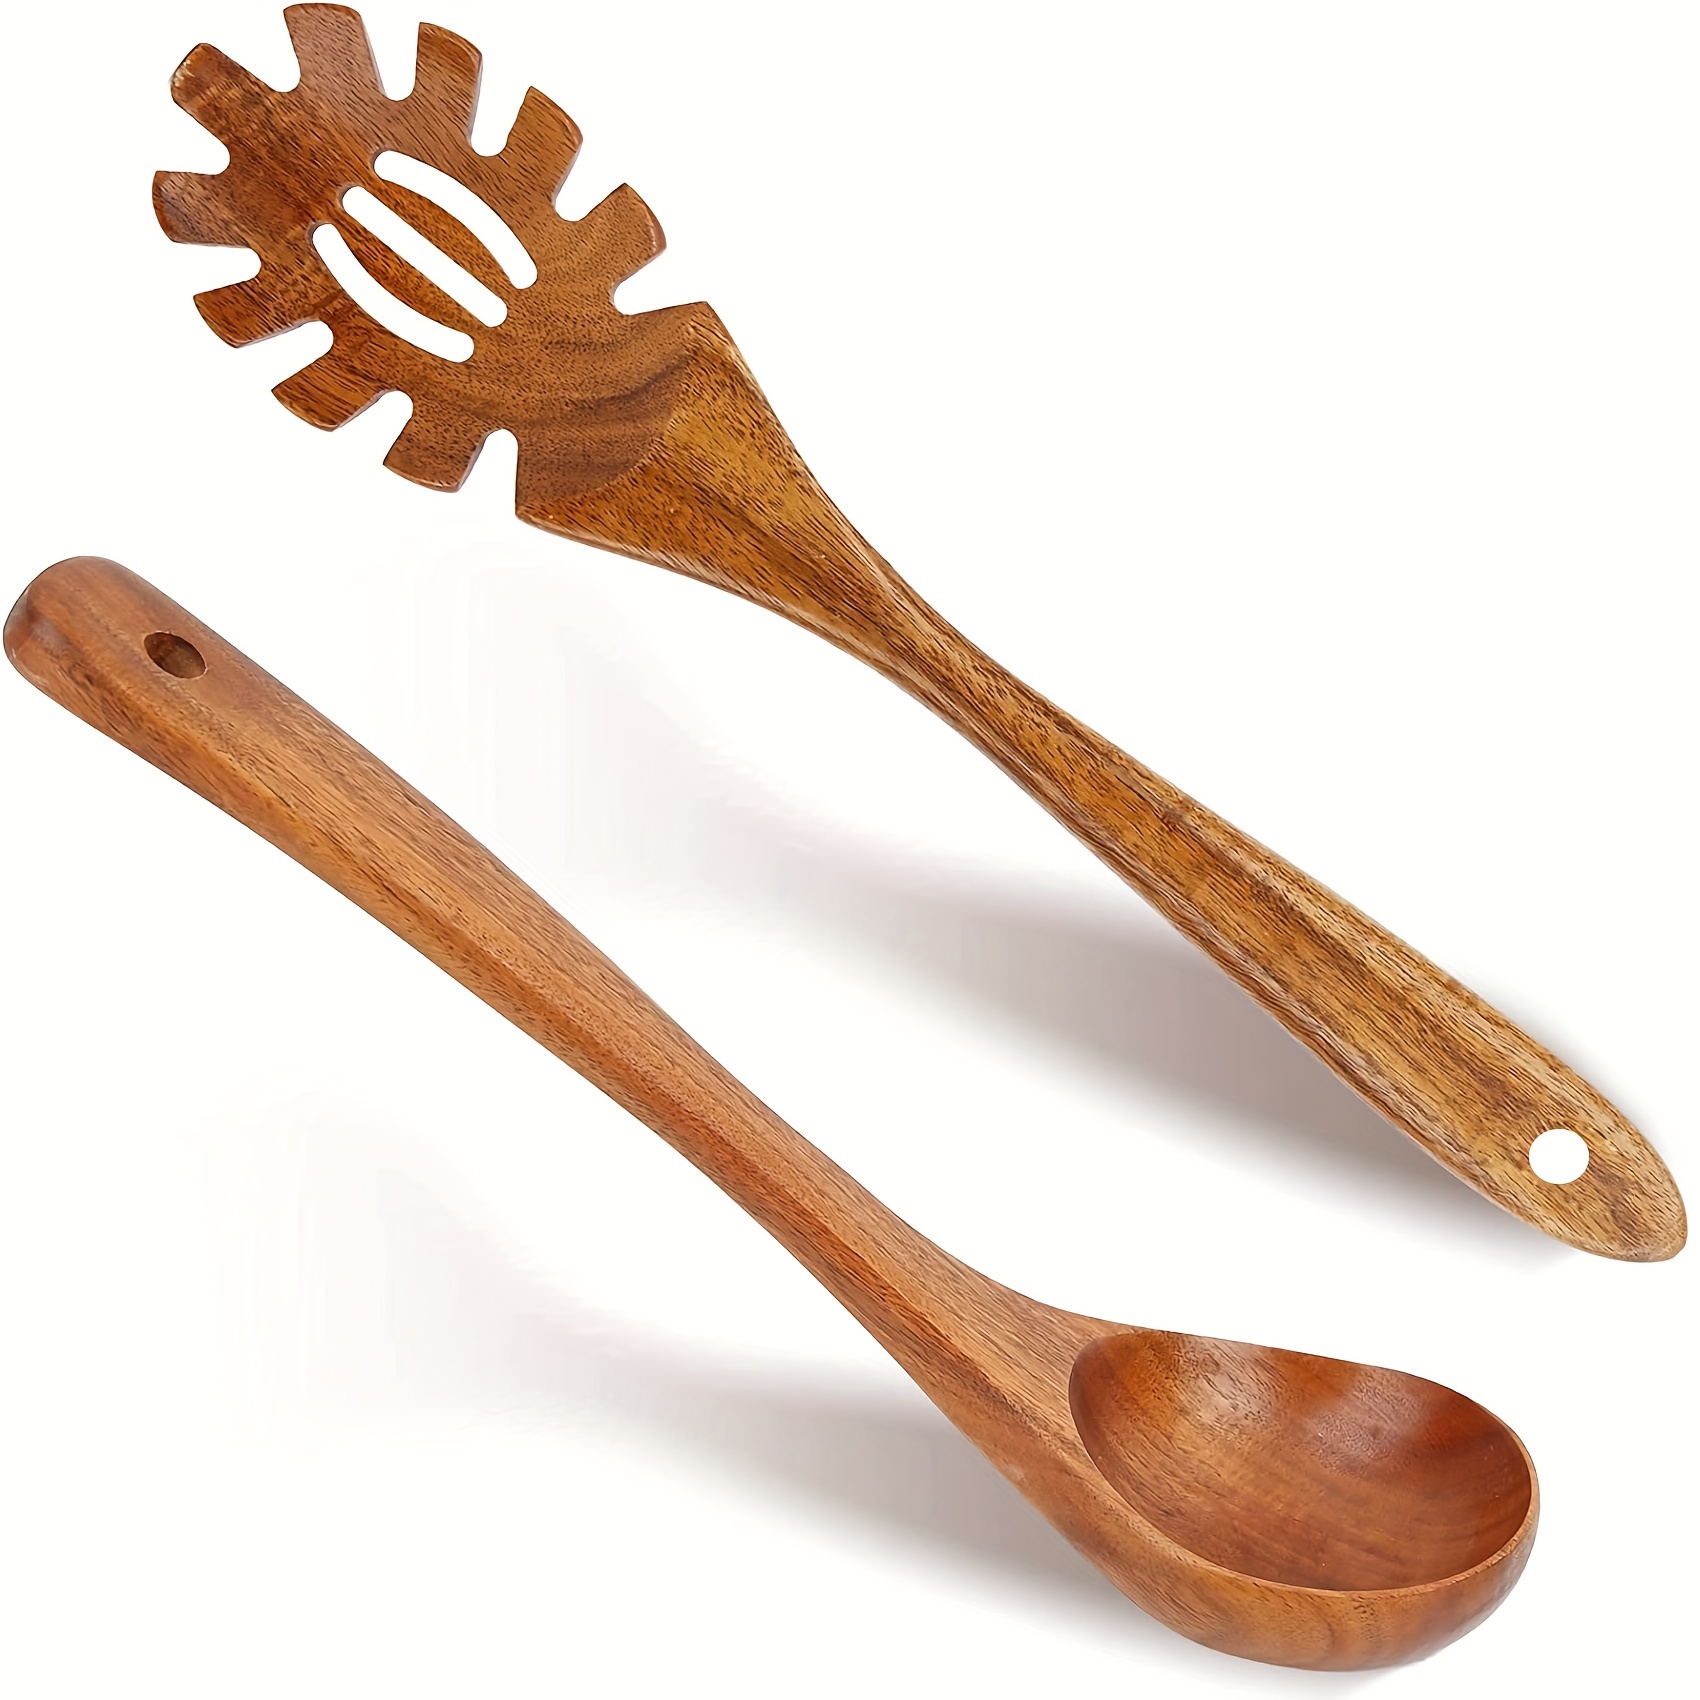 Folkulture Juego de cucharas de madera para cocina y soporte para cucharas,  utensilios de cocina antiadherentes, incluye cuchara de madera, espátula